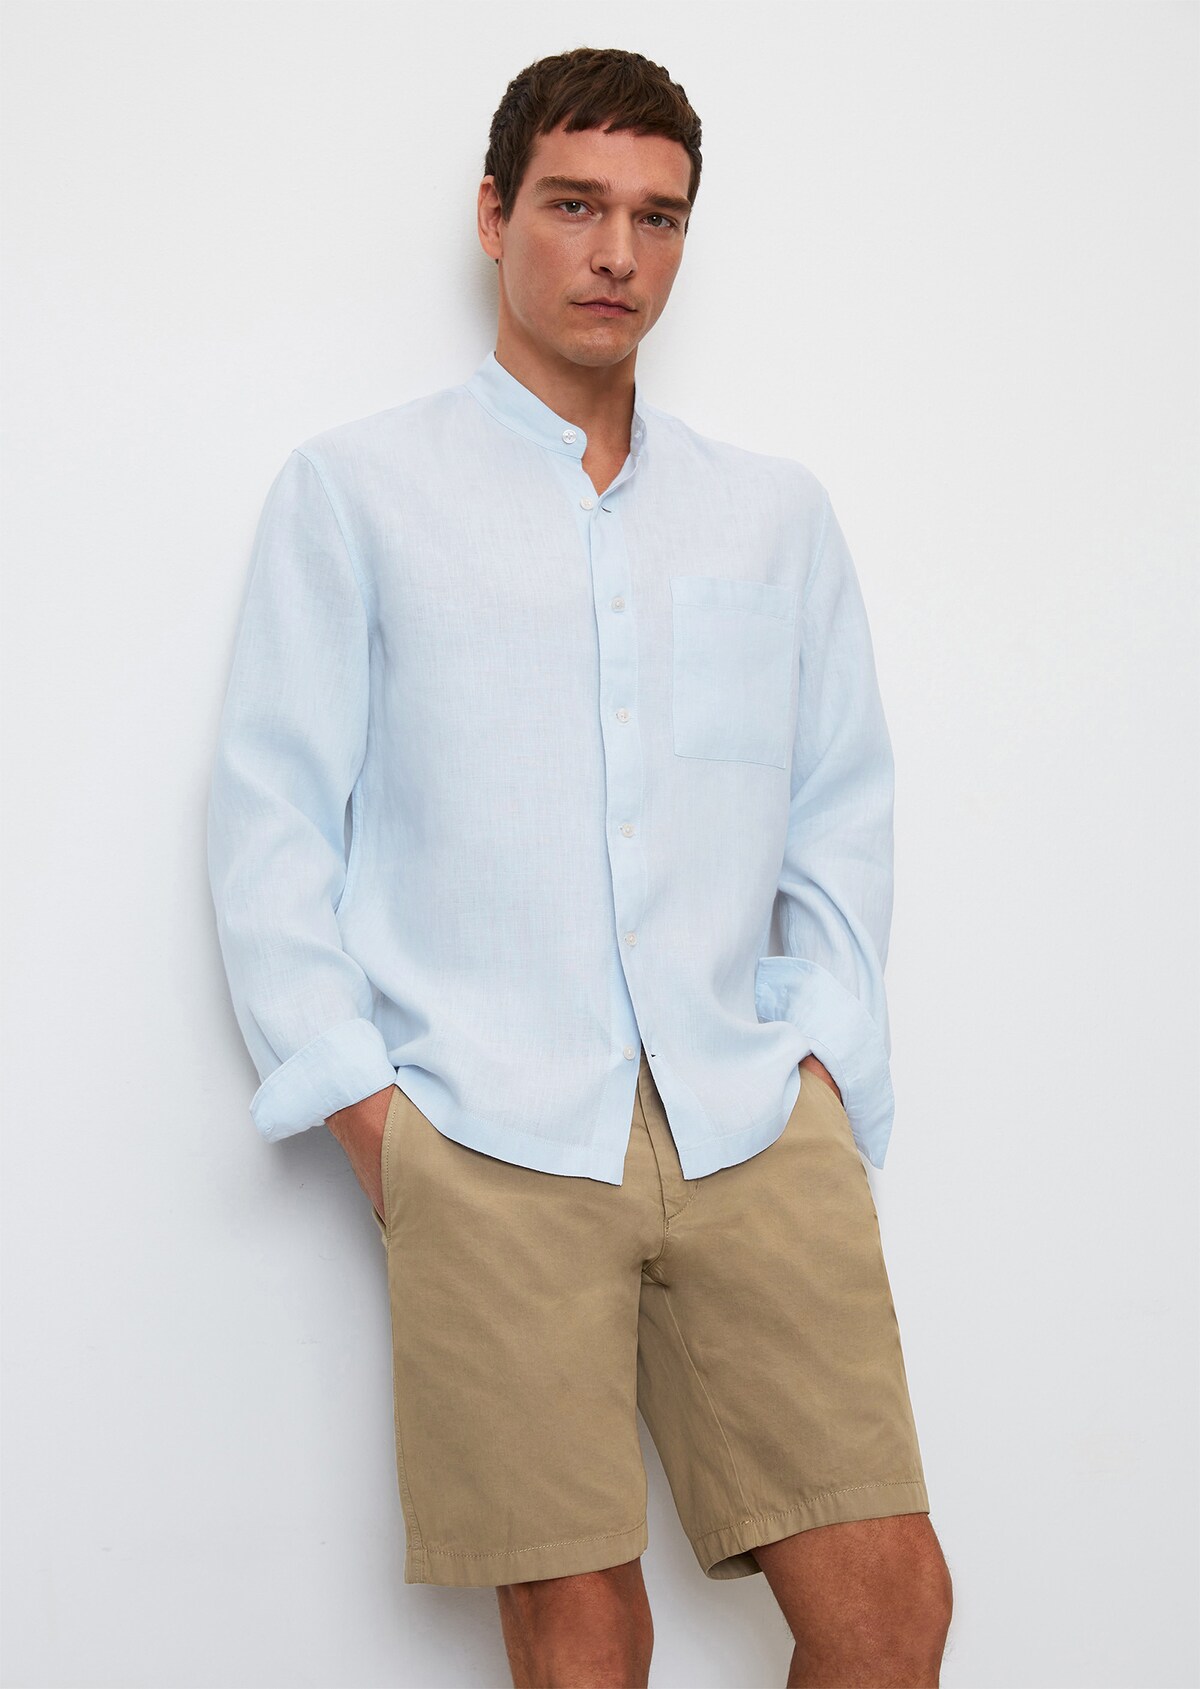 LACOSTE Men’s Regular Fit Long Sleeve Linen Shirt M - XXL RRP £120